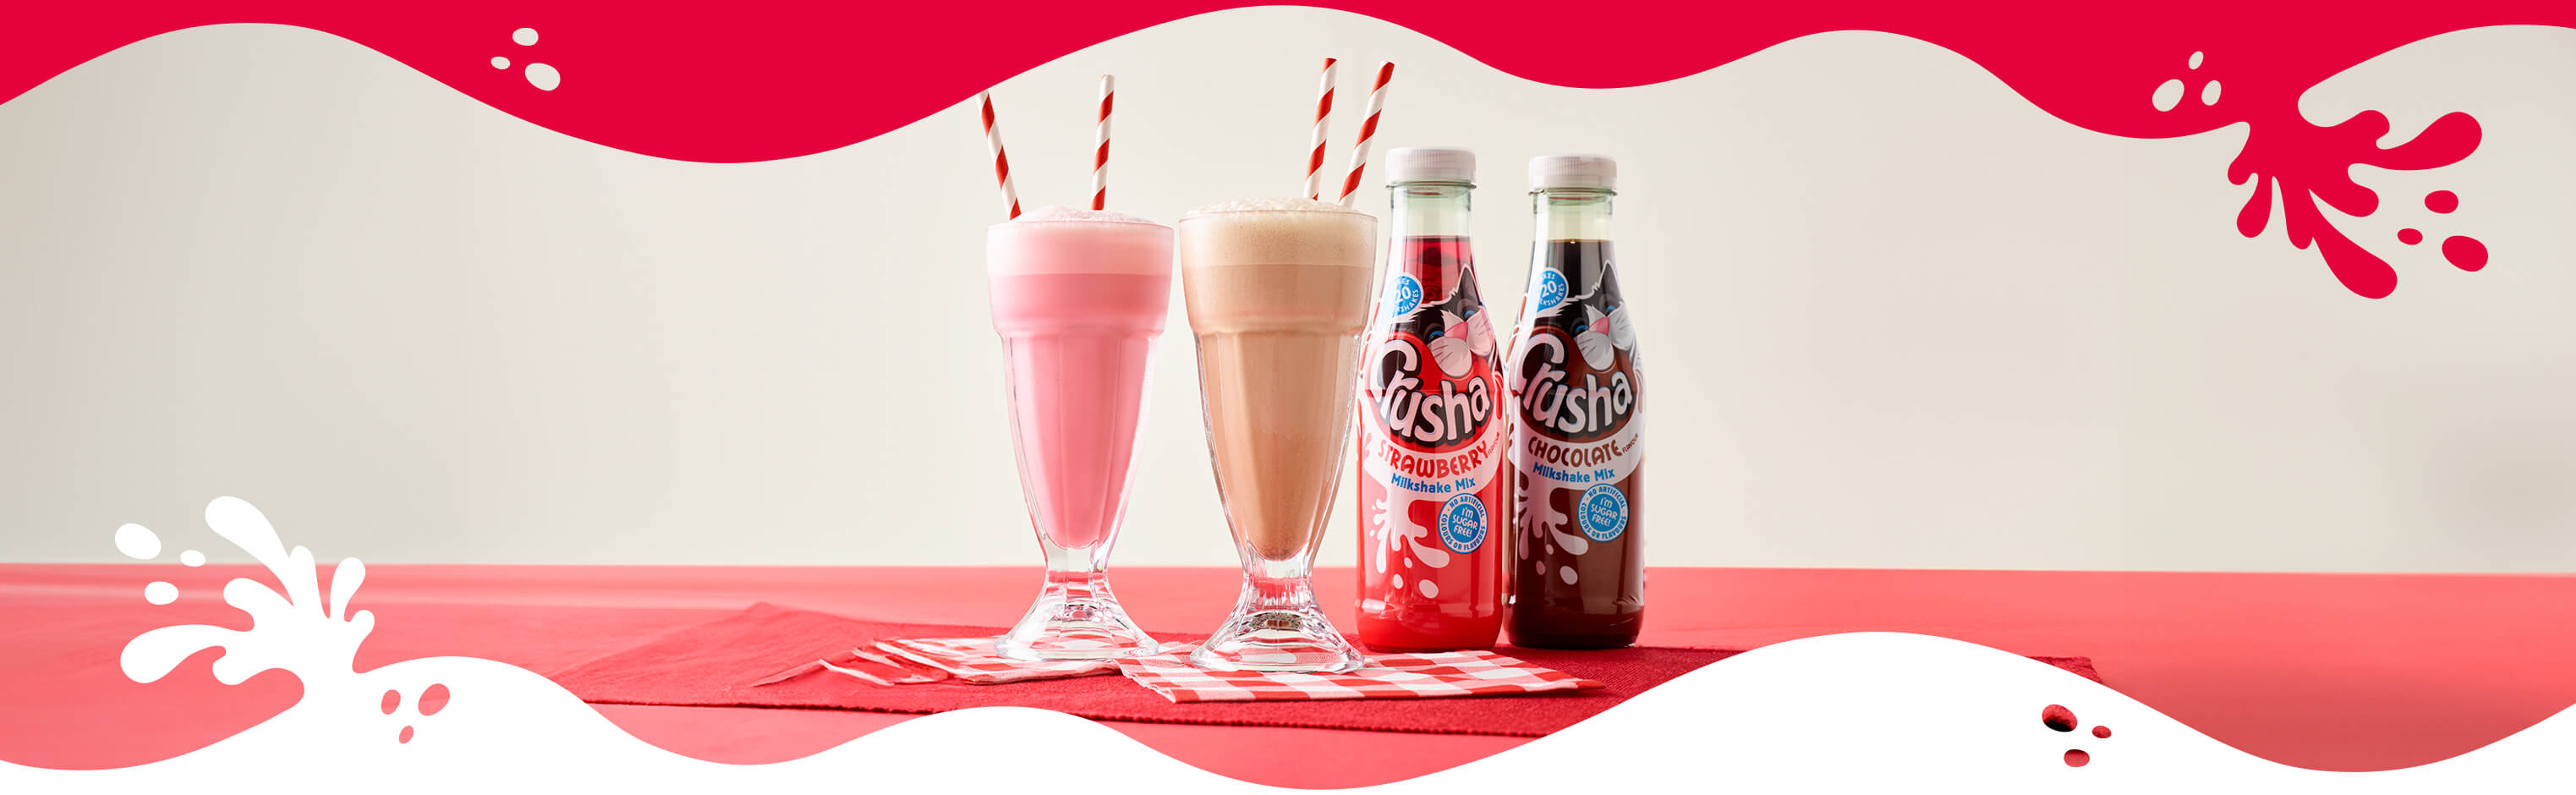 Crusha Milkshake Mix bottles alongside two milkshakes in tall glasses with stripy straws.